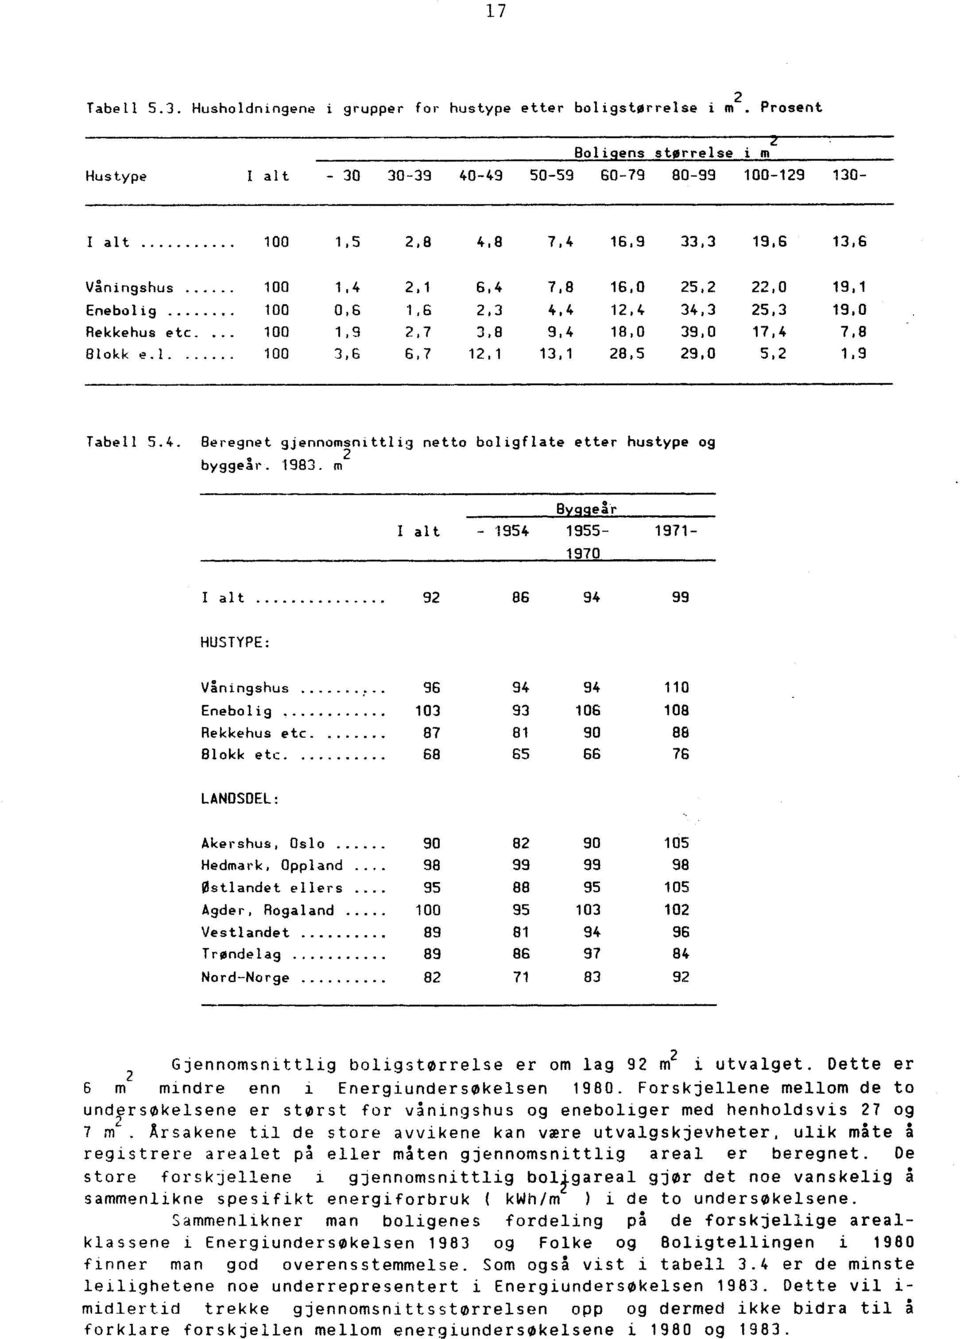 7 12,1 13,1 28,5 29,0 5,2 1.9 Tabell 5.4. e*reenet gjennomsnittlig netto boligflate etter hustype og uveoeur.. 1983.